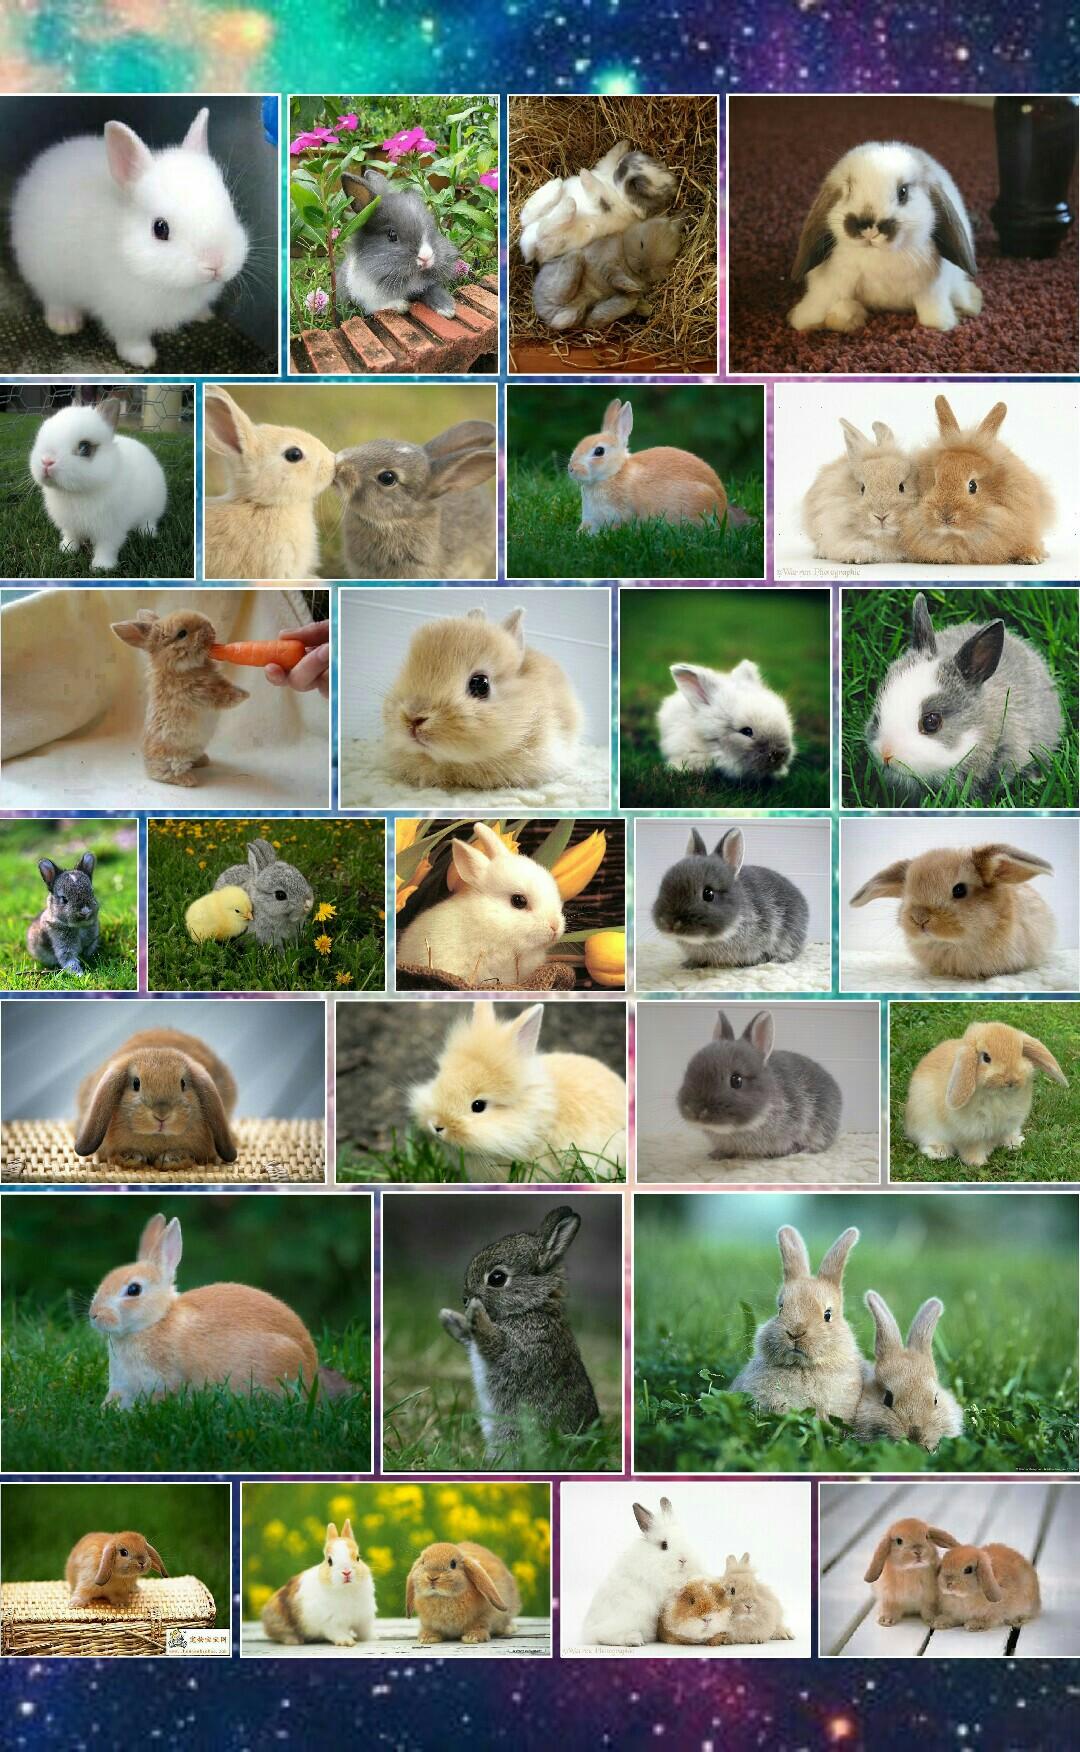 I "bun" you, bunnies!